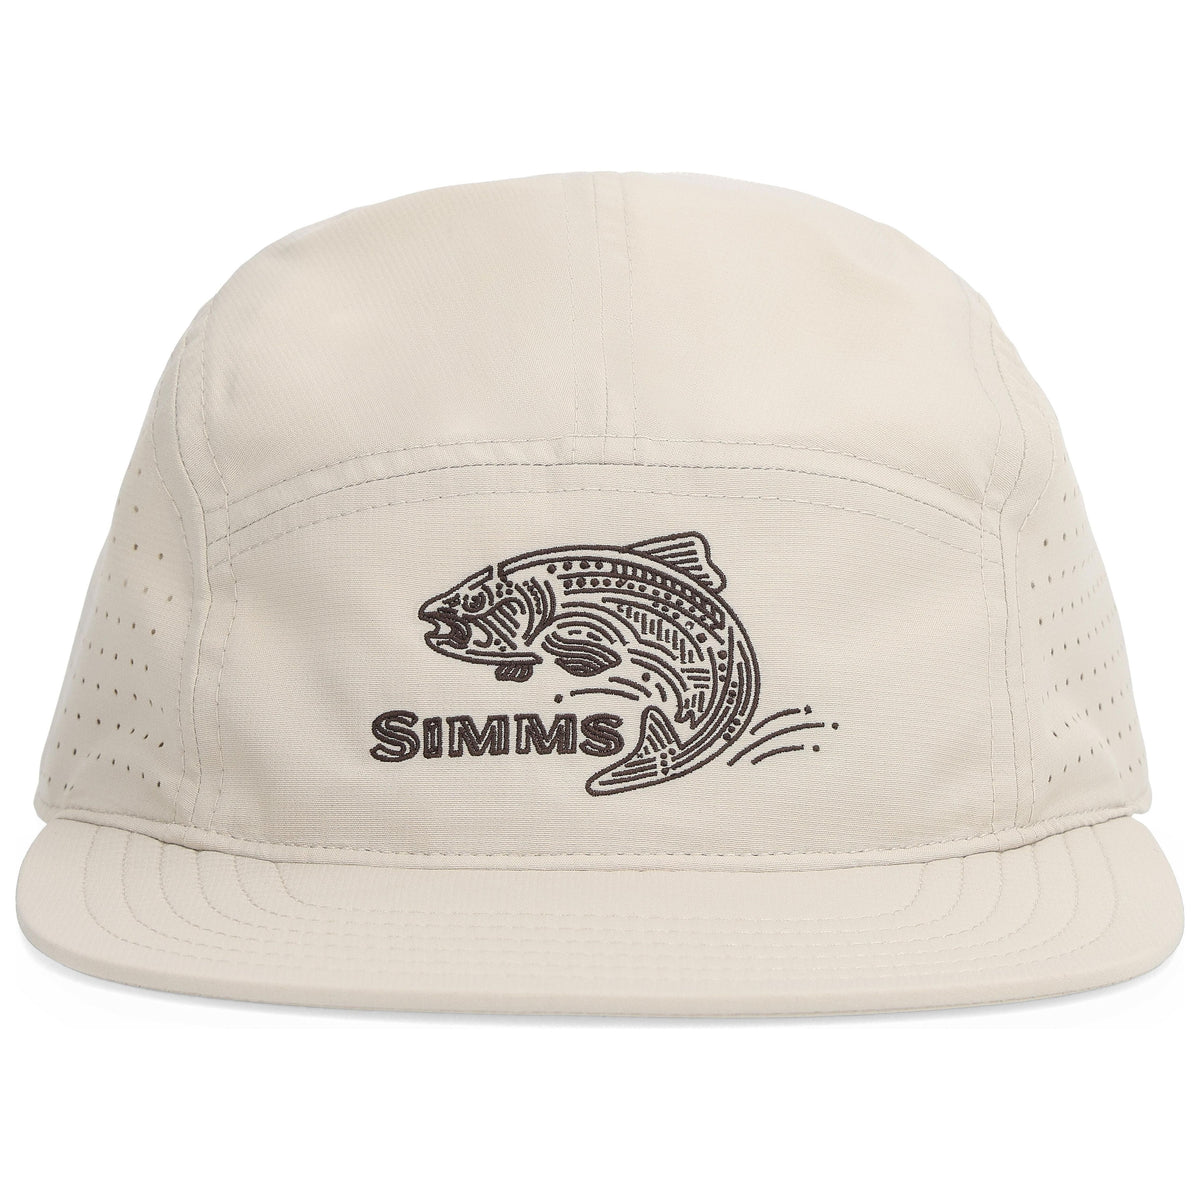 Simms - Single Haul Pack Cap - Stone